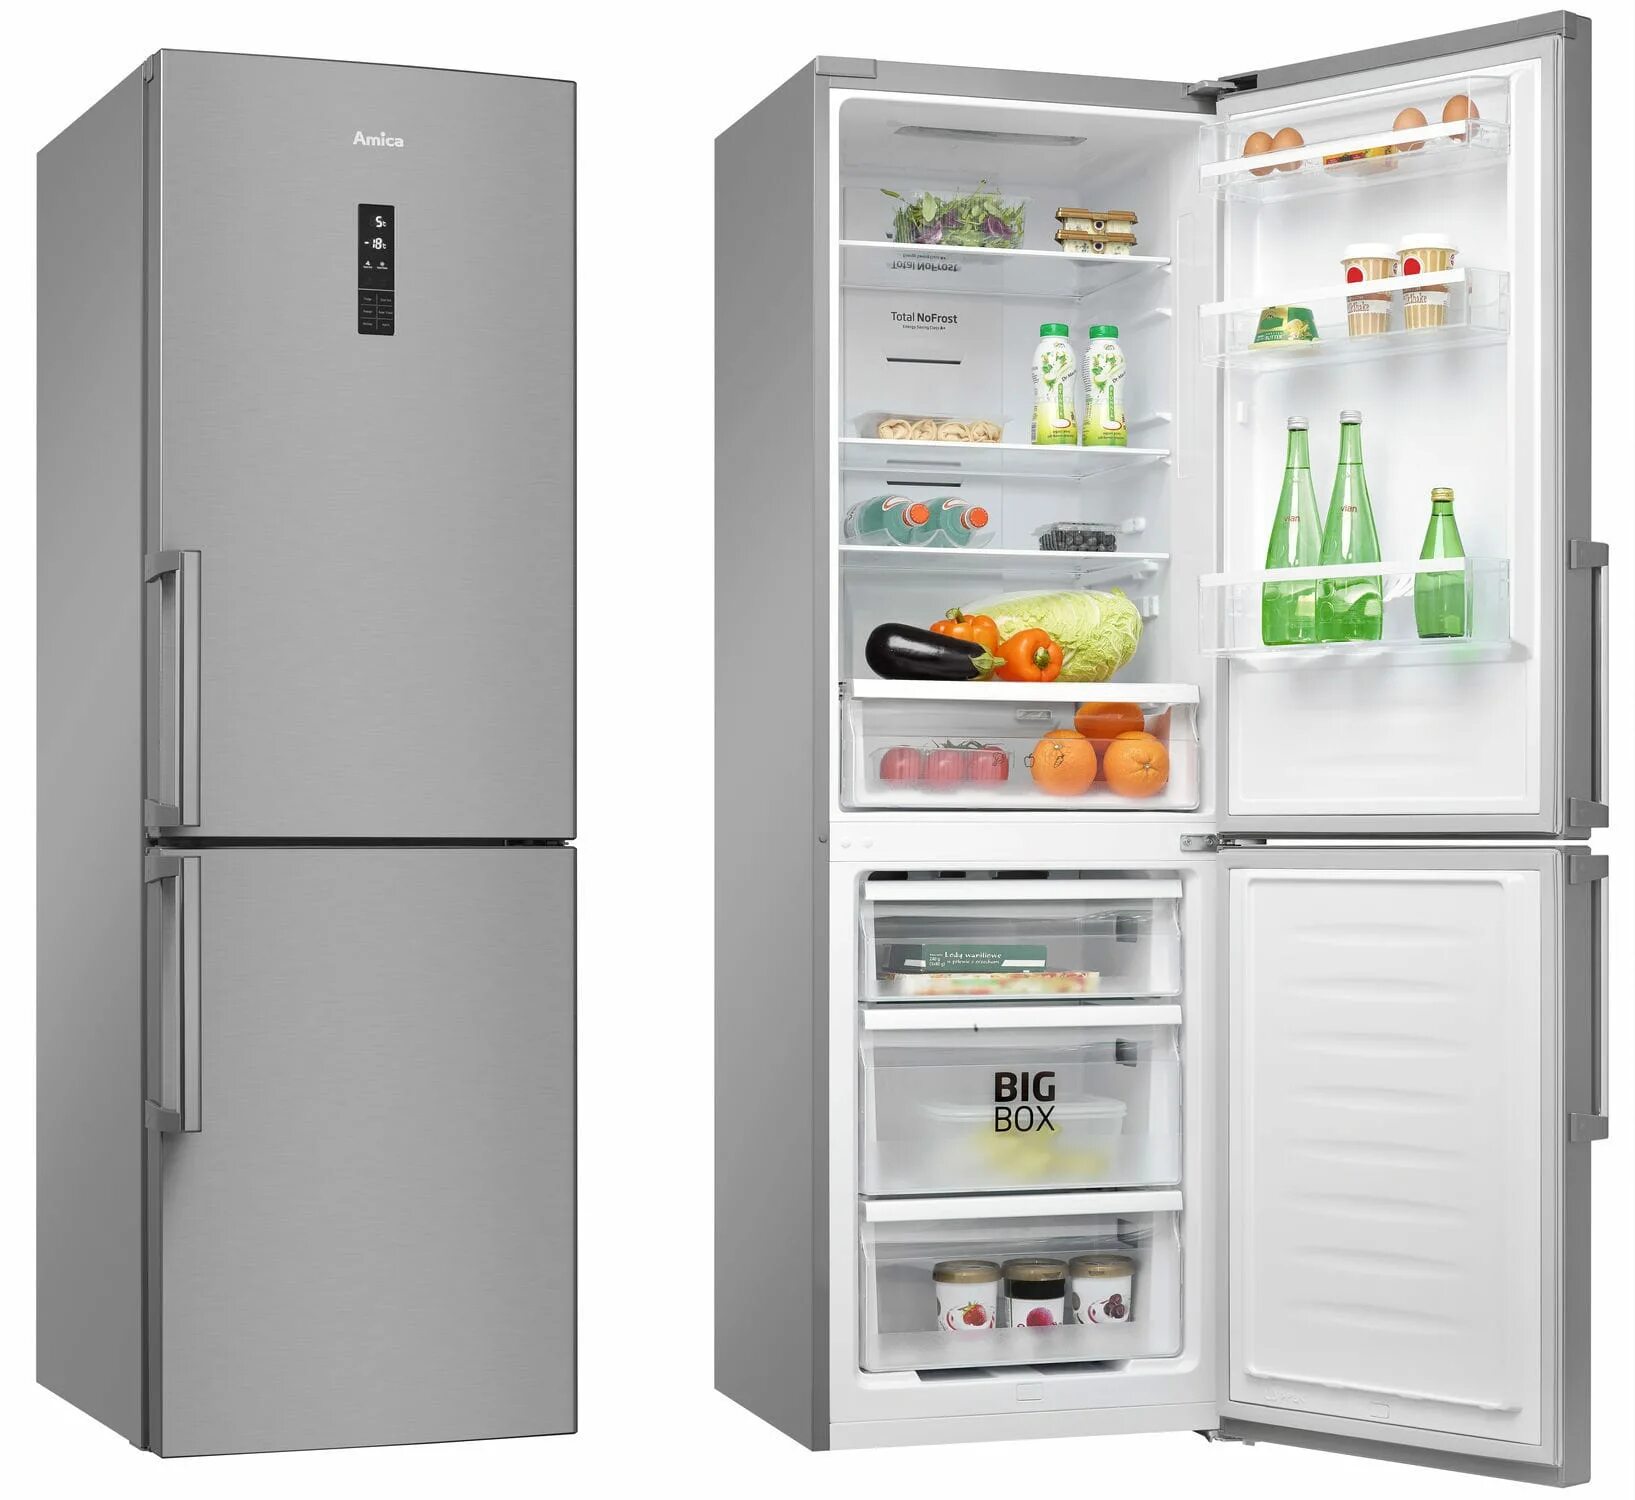 Марки холодильников. Марки холодильников лучшие. Виды холодильников. Холодильник с нижней морозильной камерой.